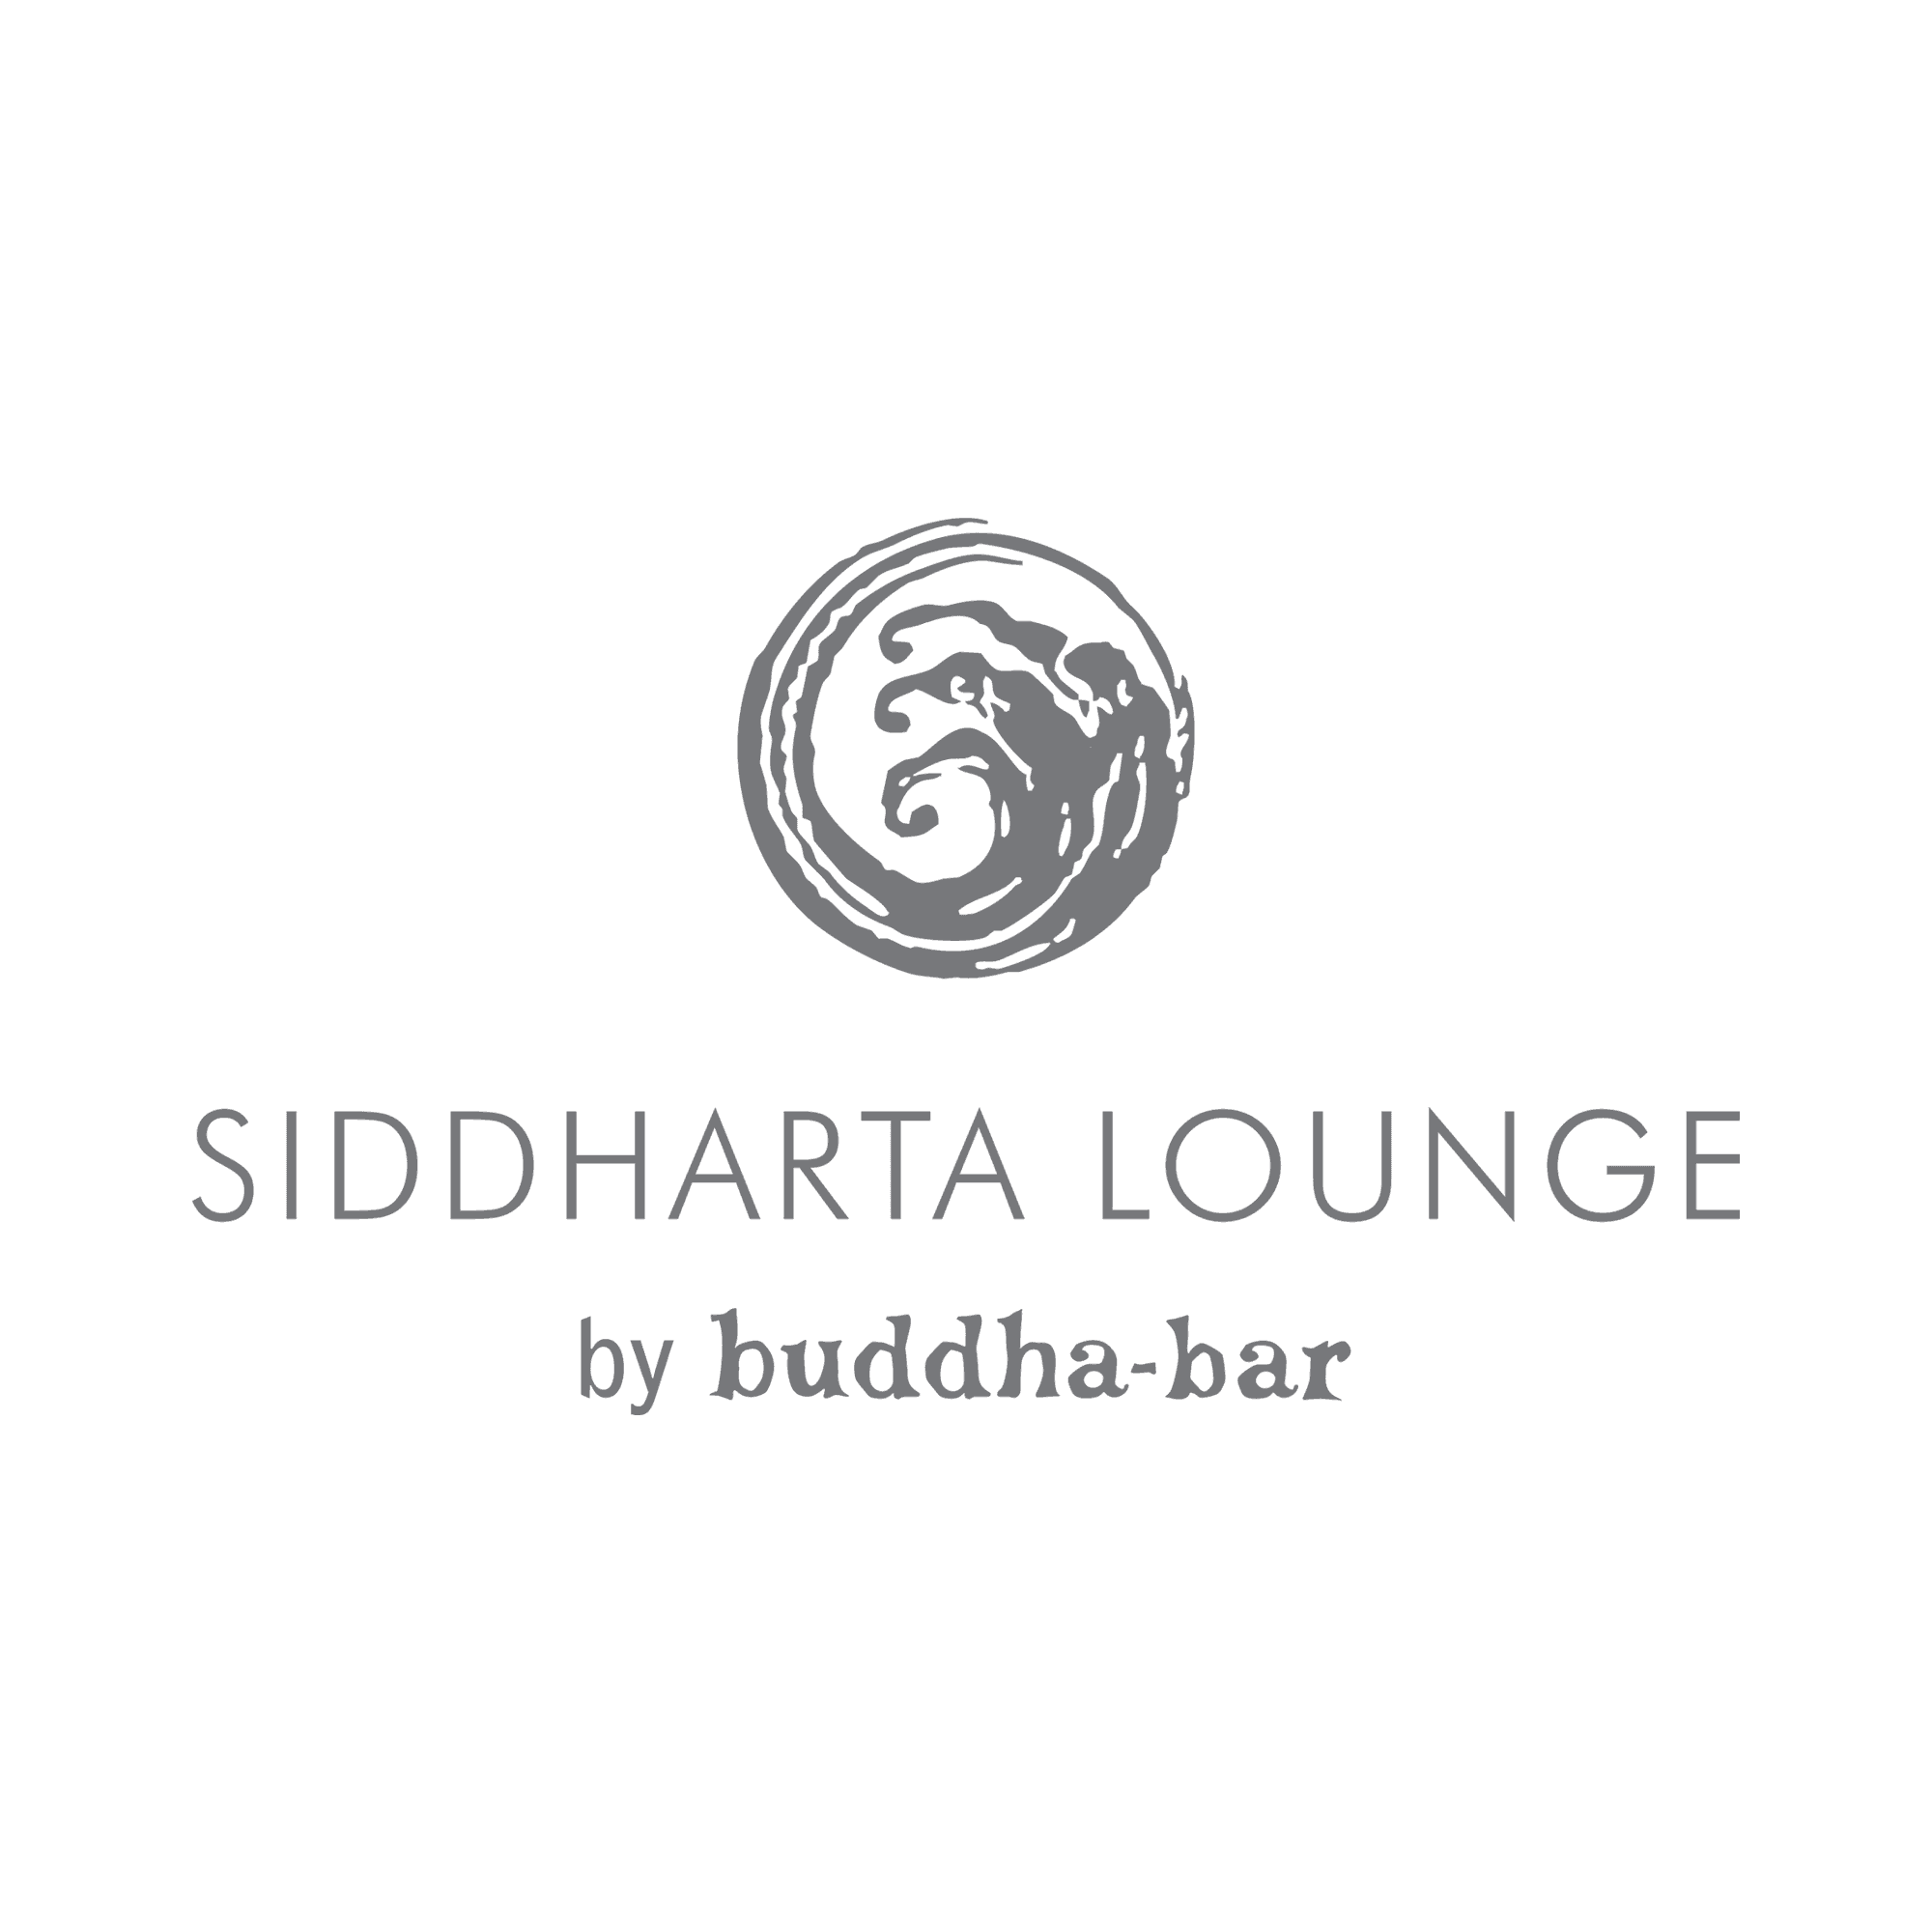 Siddharta Lounge Dubai